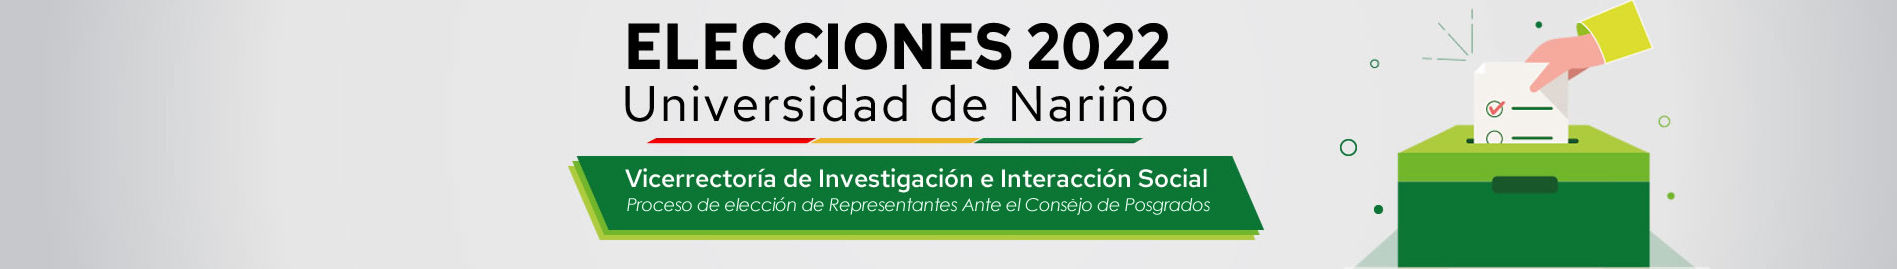 elecciones-2022-banner